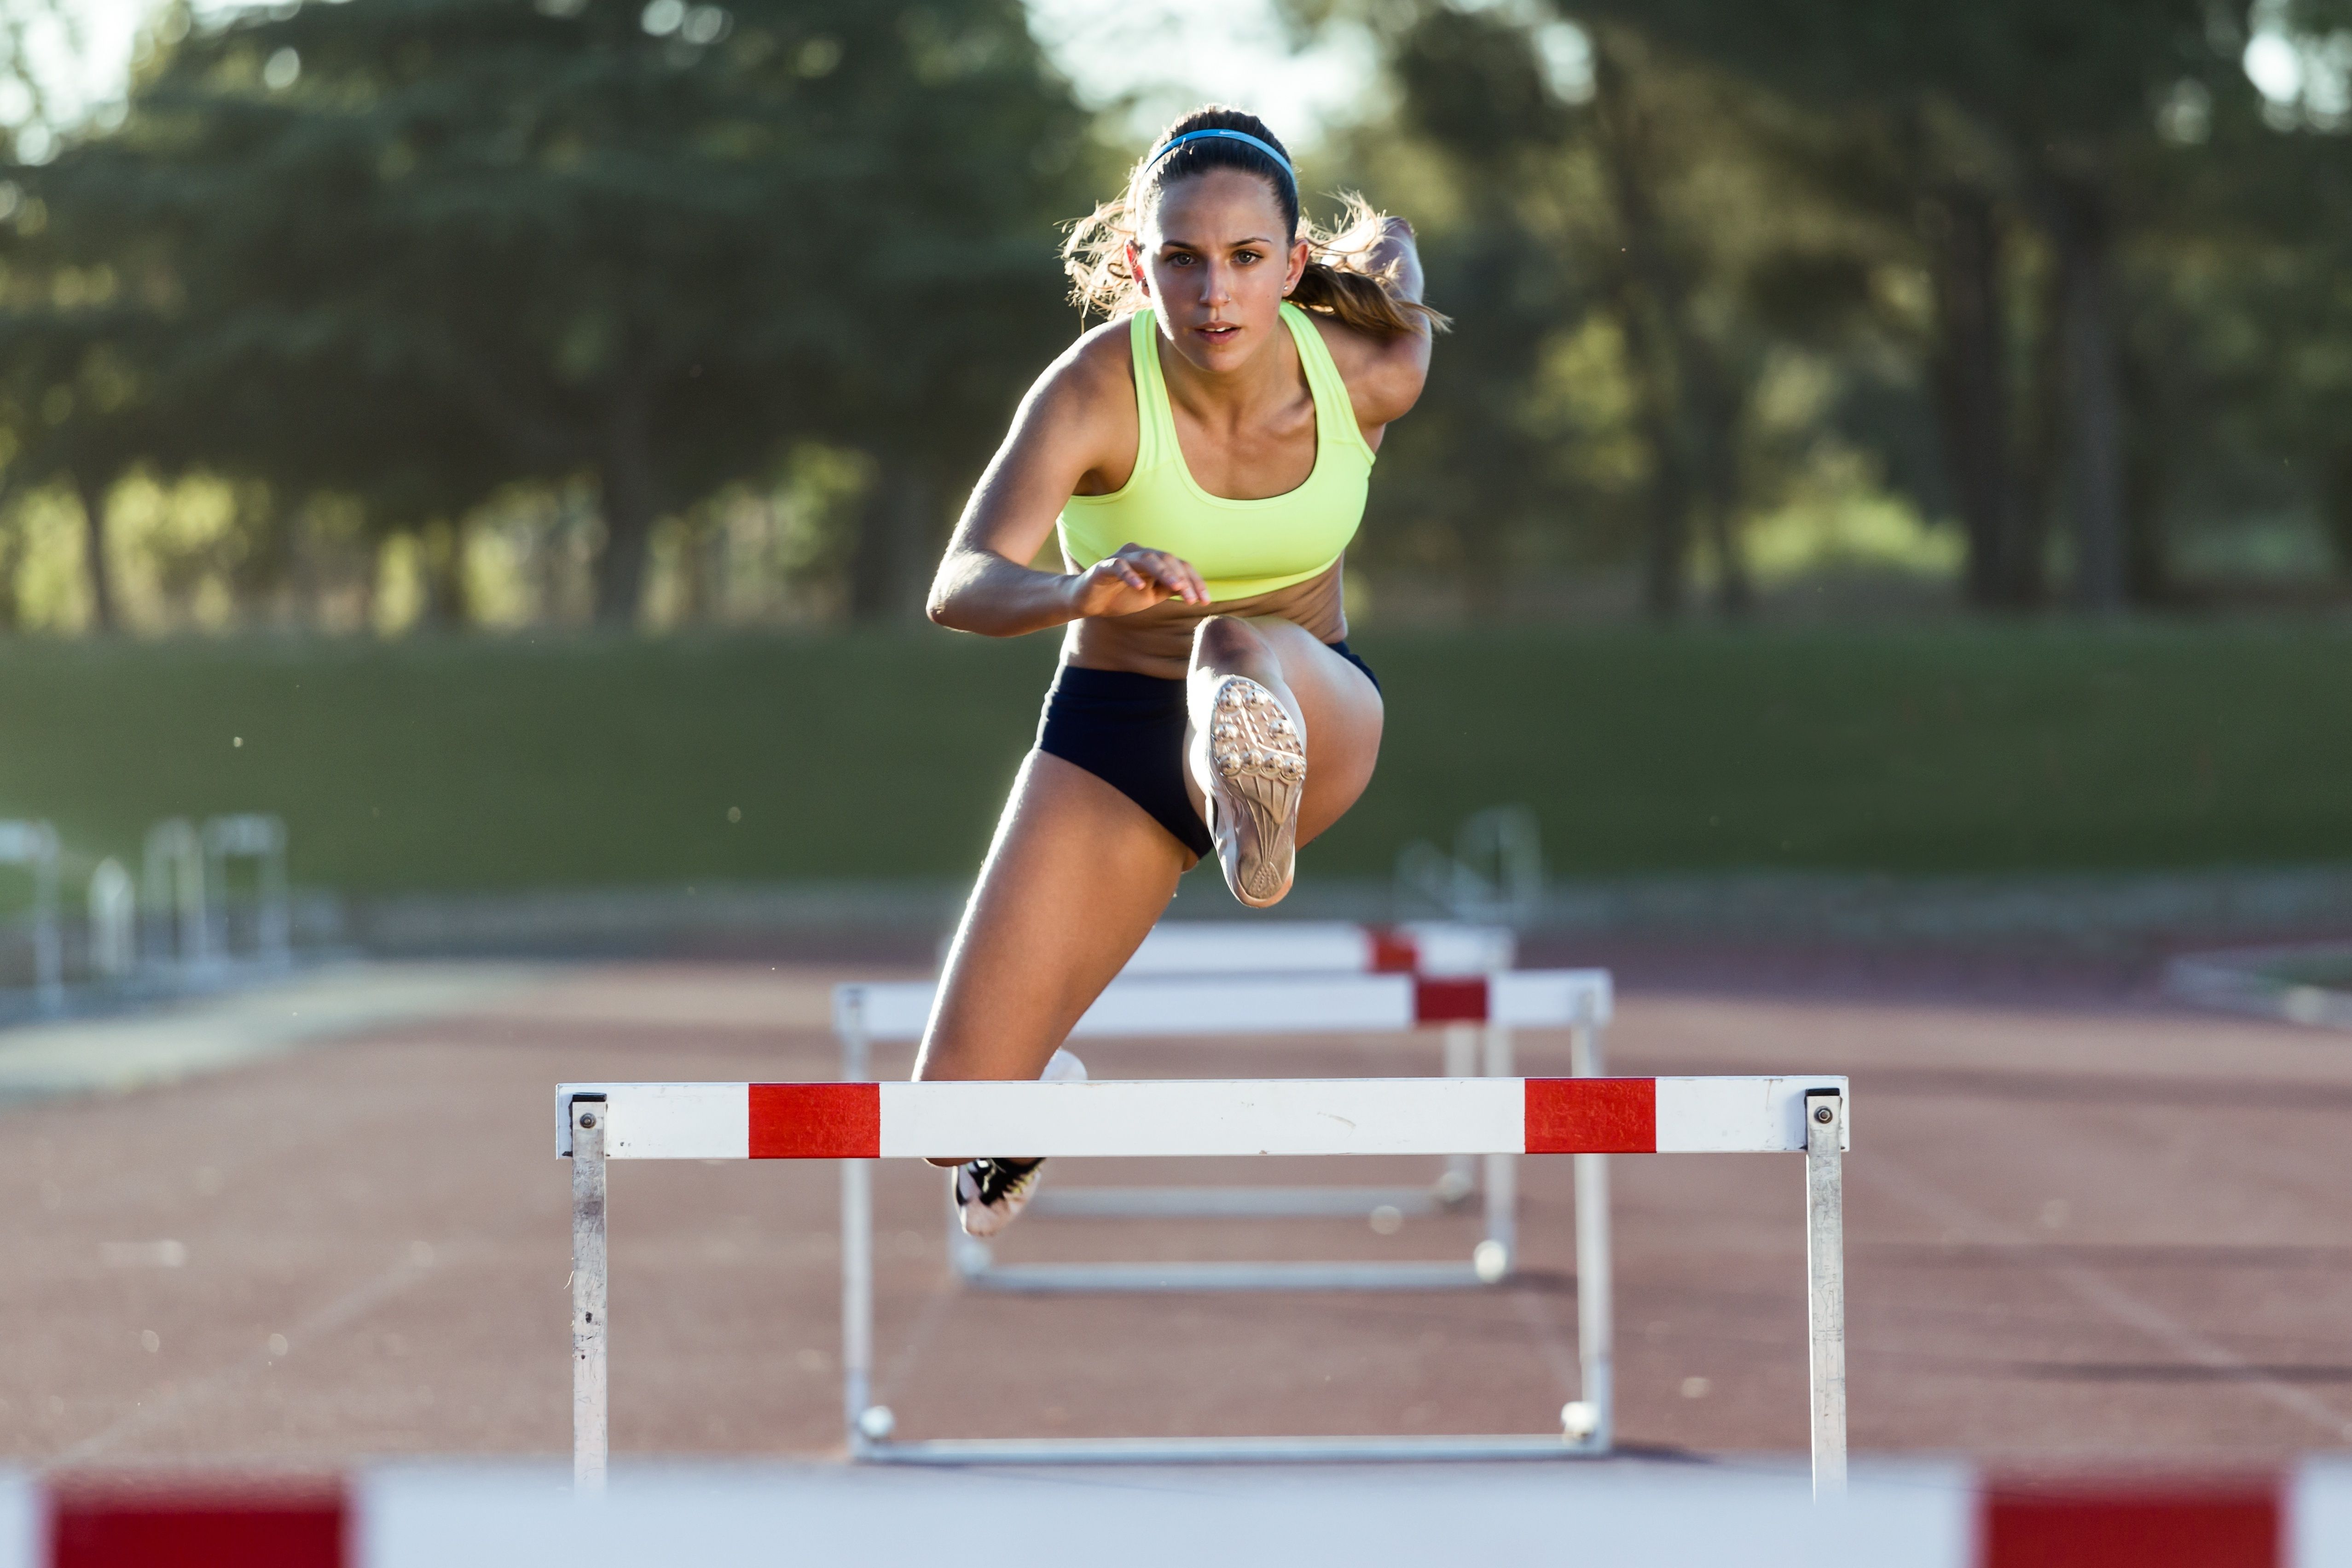 Download Wallpaper girl running hurdles 110 meters, 5110x3407